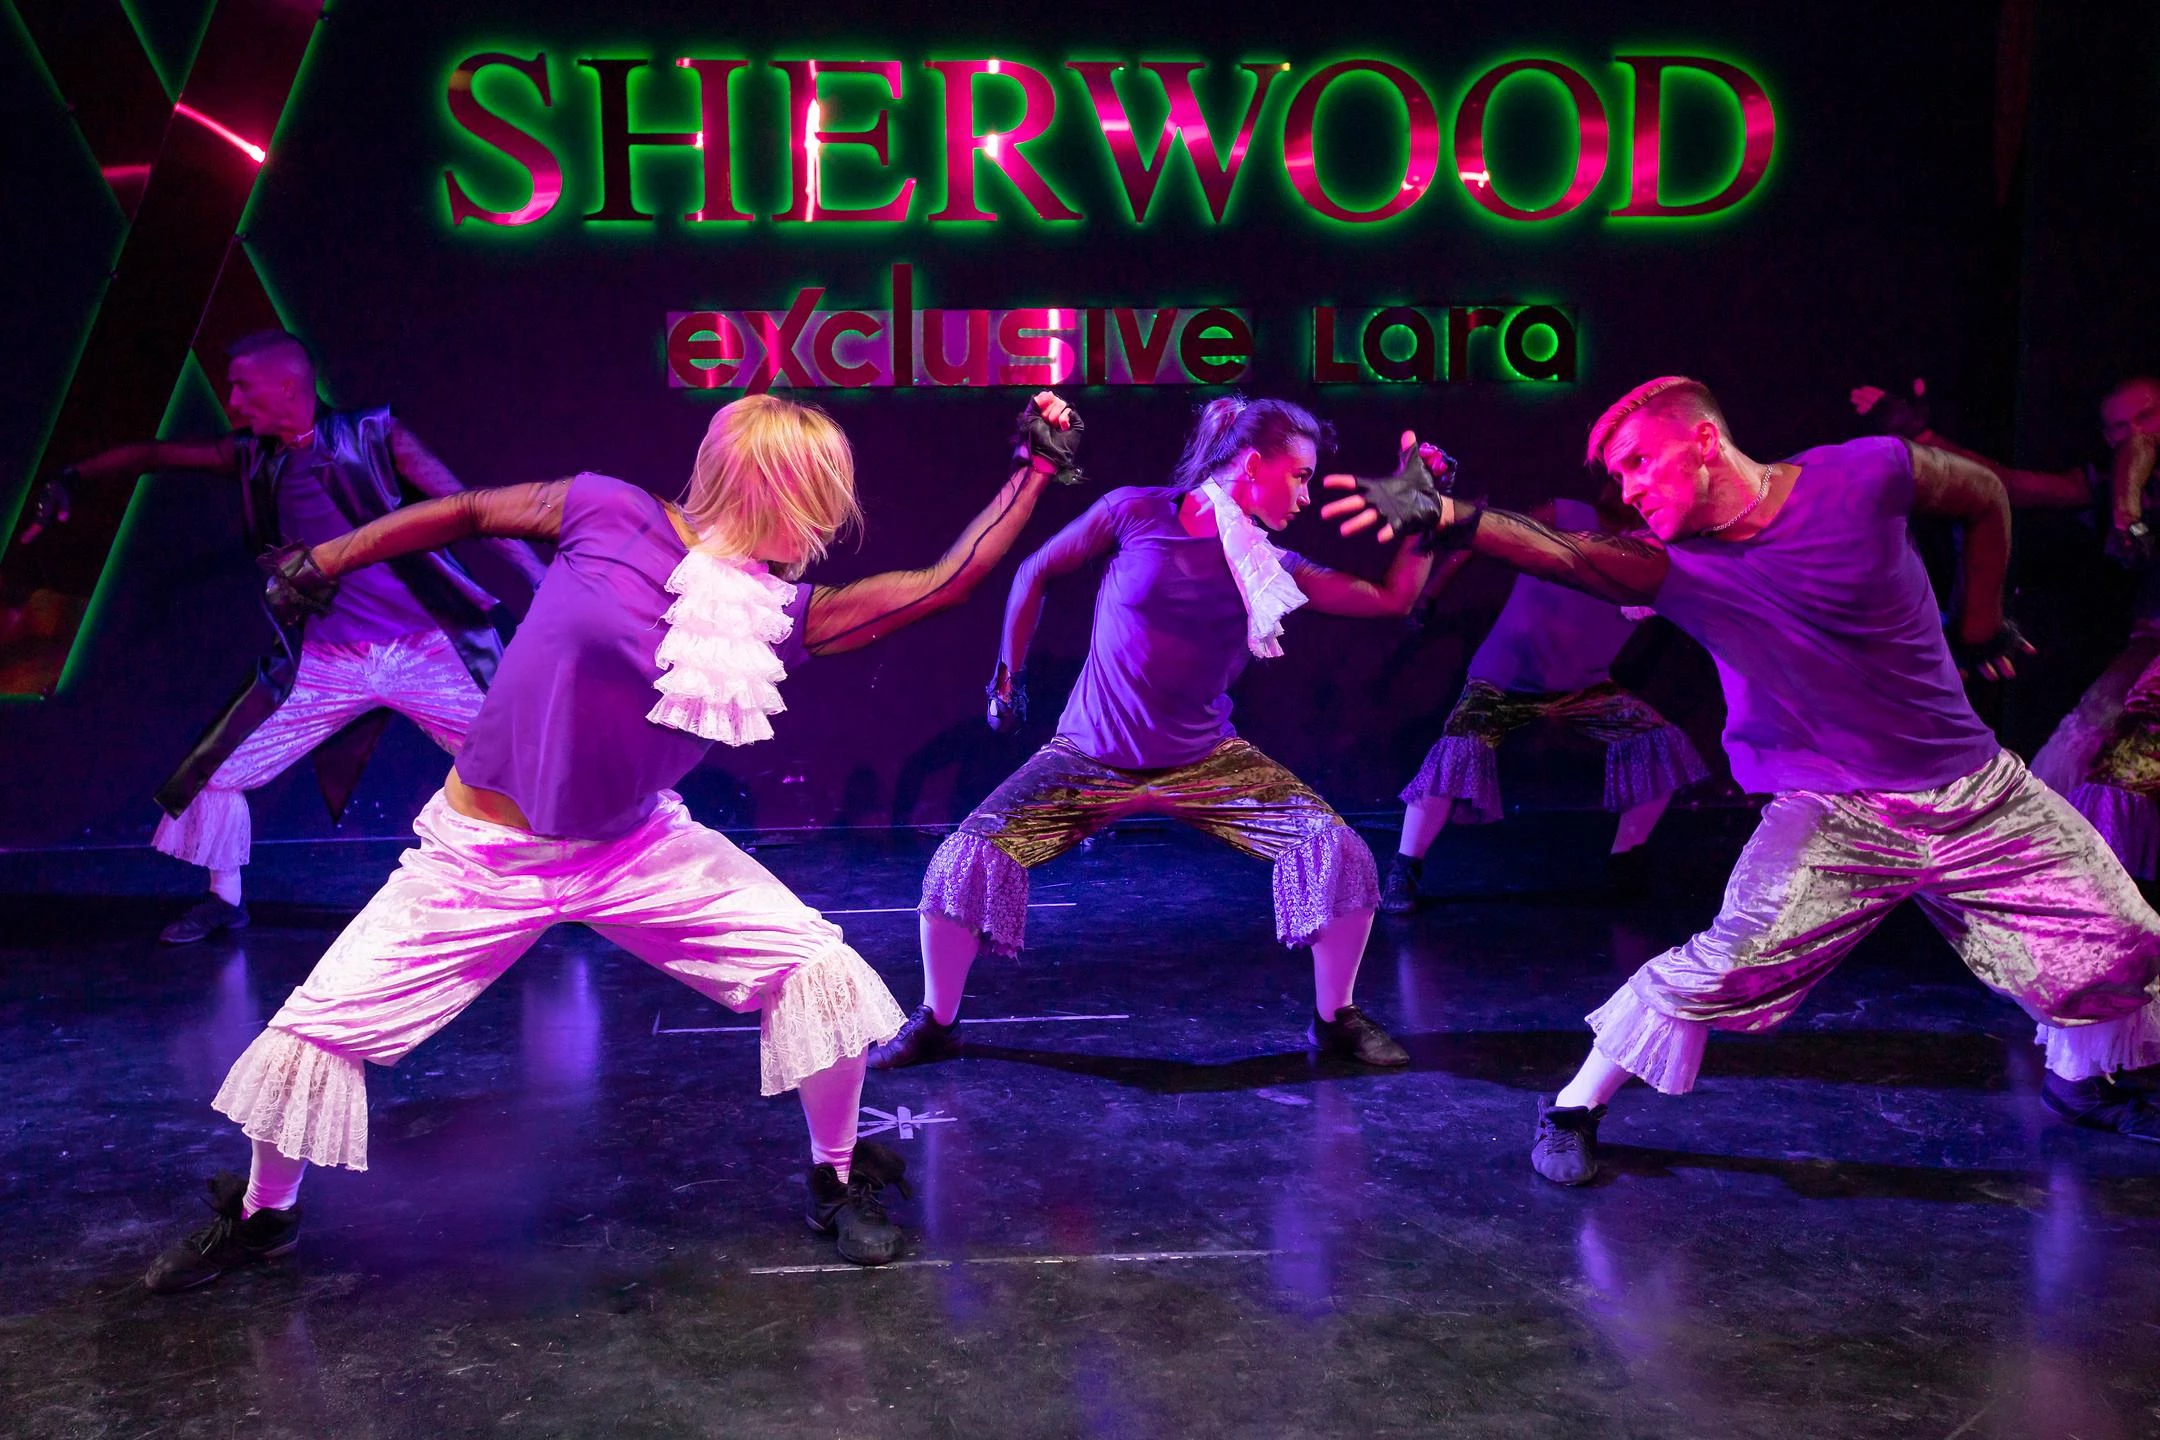 sherwood-exclusive-lara-aktivite-1515